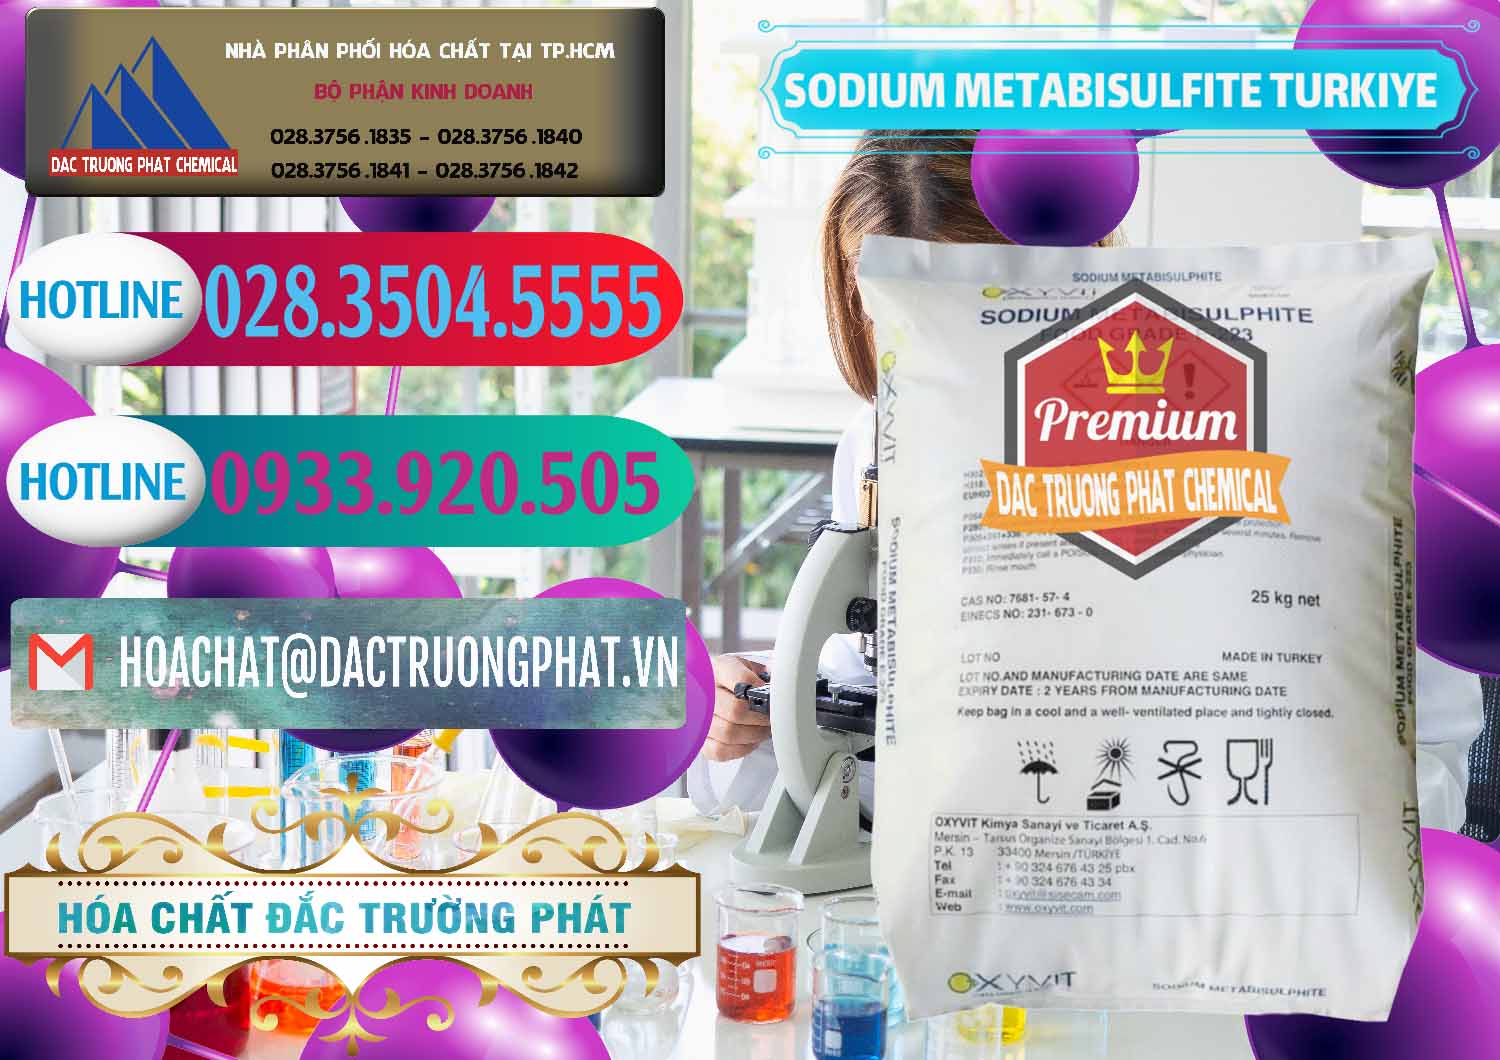 Công ty chuyên bán ( cung cấp ) Sodium Metabisulfite - NA2S2O5 Food Grade E-223 Thổ Nhĩ Kỳ Turkey - 0413 - Cty phân phối ( kinh doanh ) hóa chất tại TP.HCM - truongphat.vn